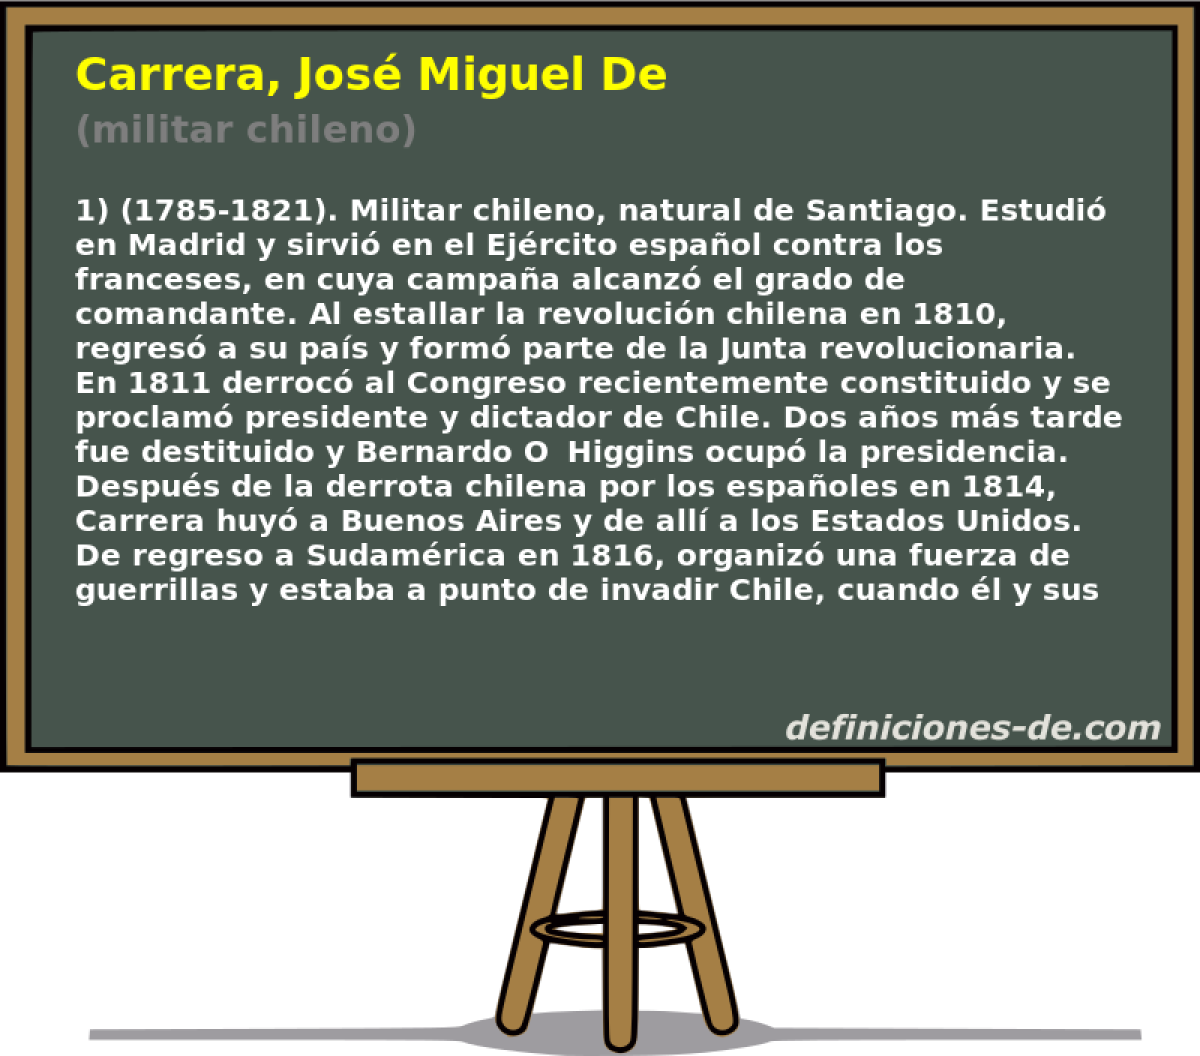 Carrera, Jos Miguel De (militar chileno)